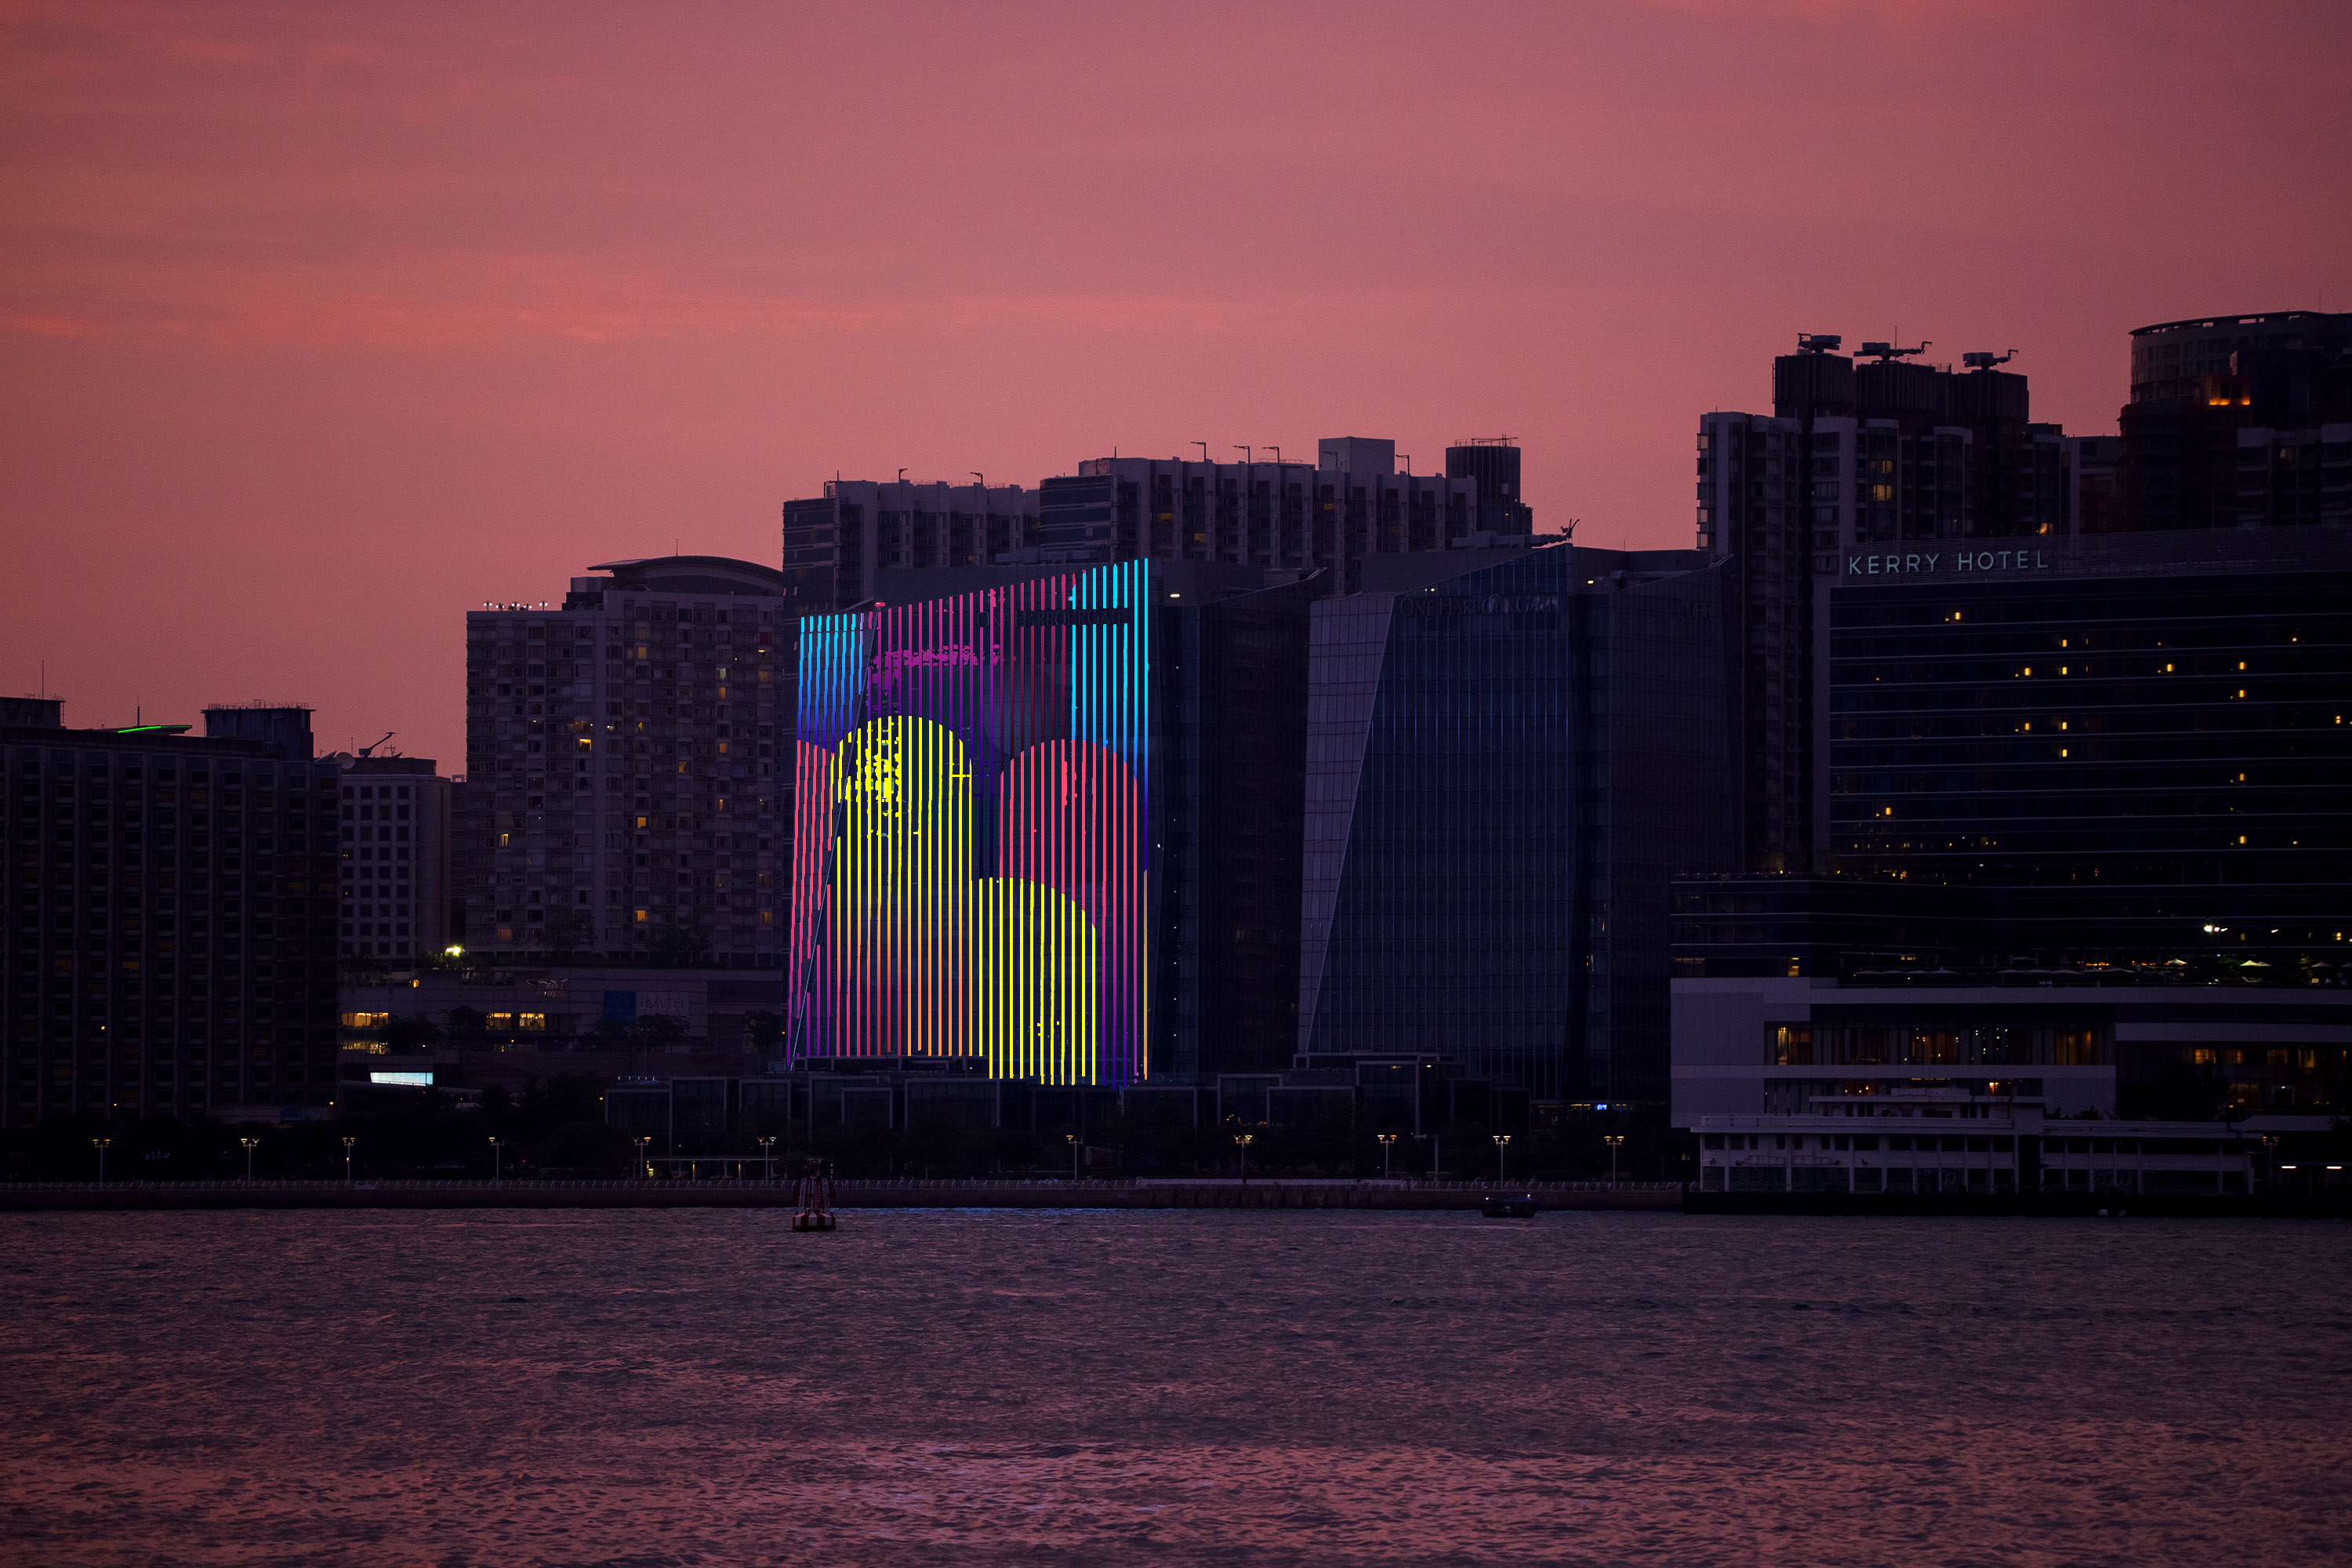 中國人壽(海外)參加新版「幻彩詠香江」匯演，與維港兩岸40多幢大廈共同播放燈光效果，展示維港充滿動感一面